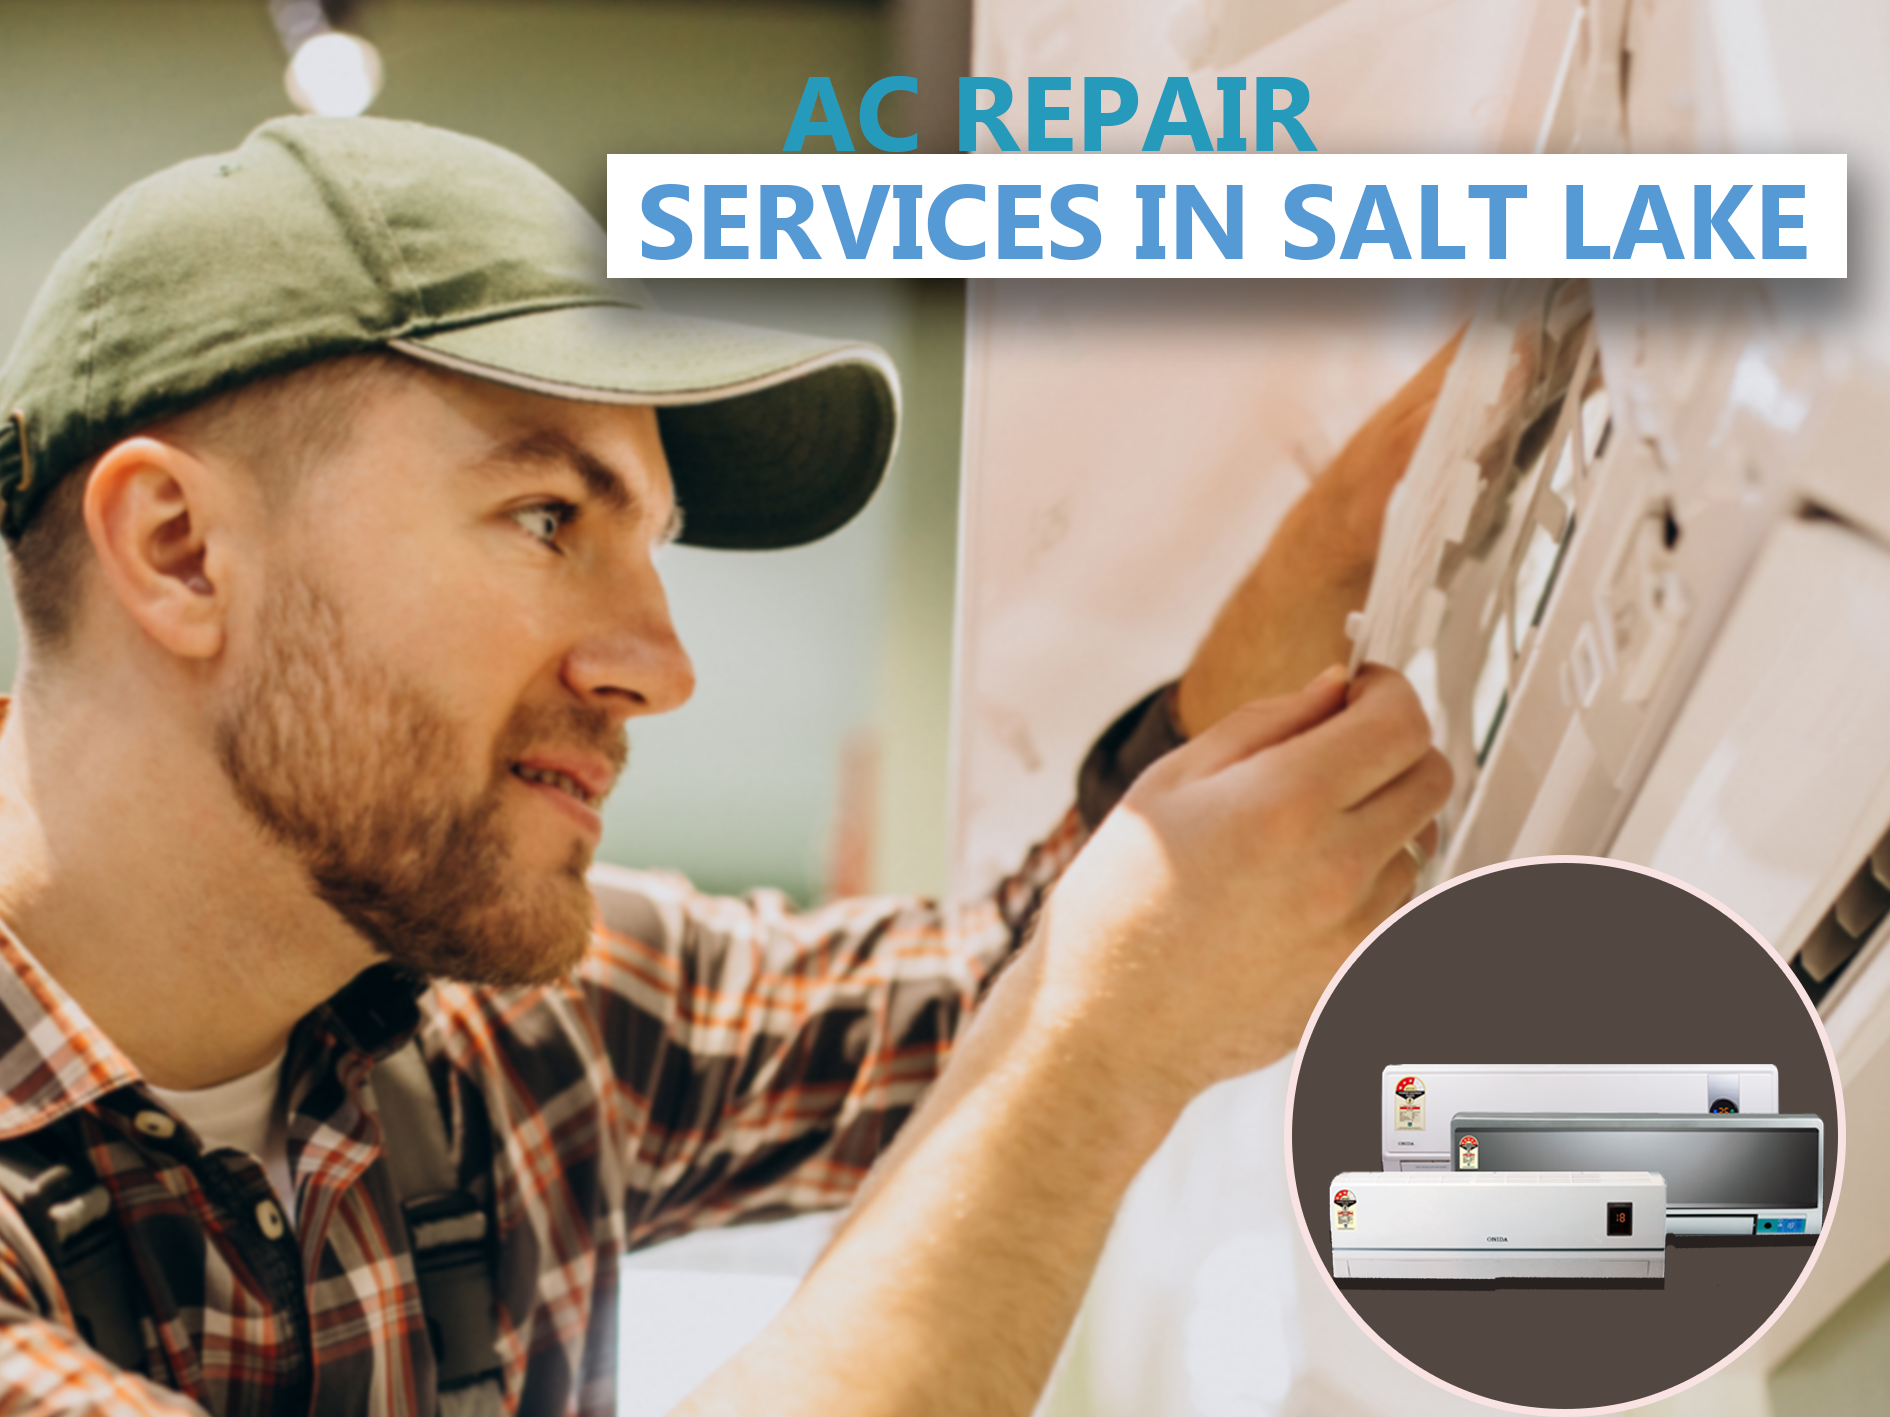 AC repair services in Salt Lake